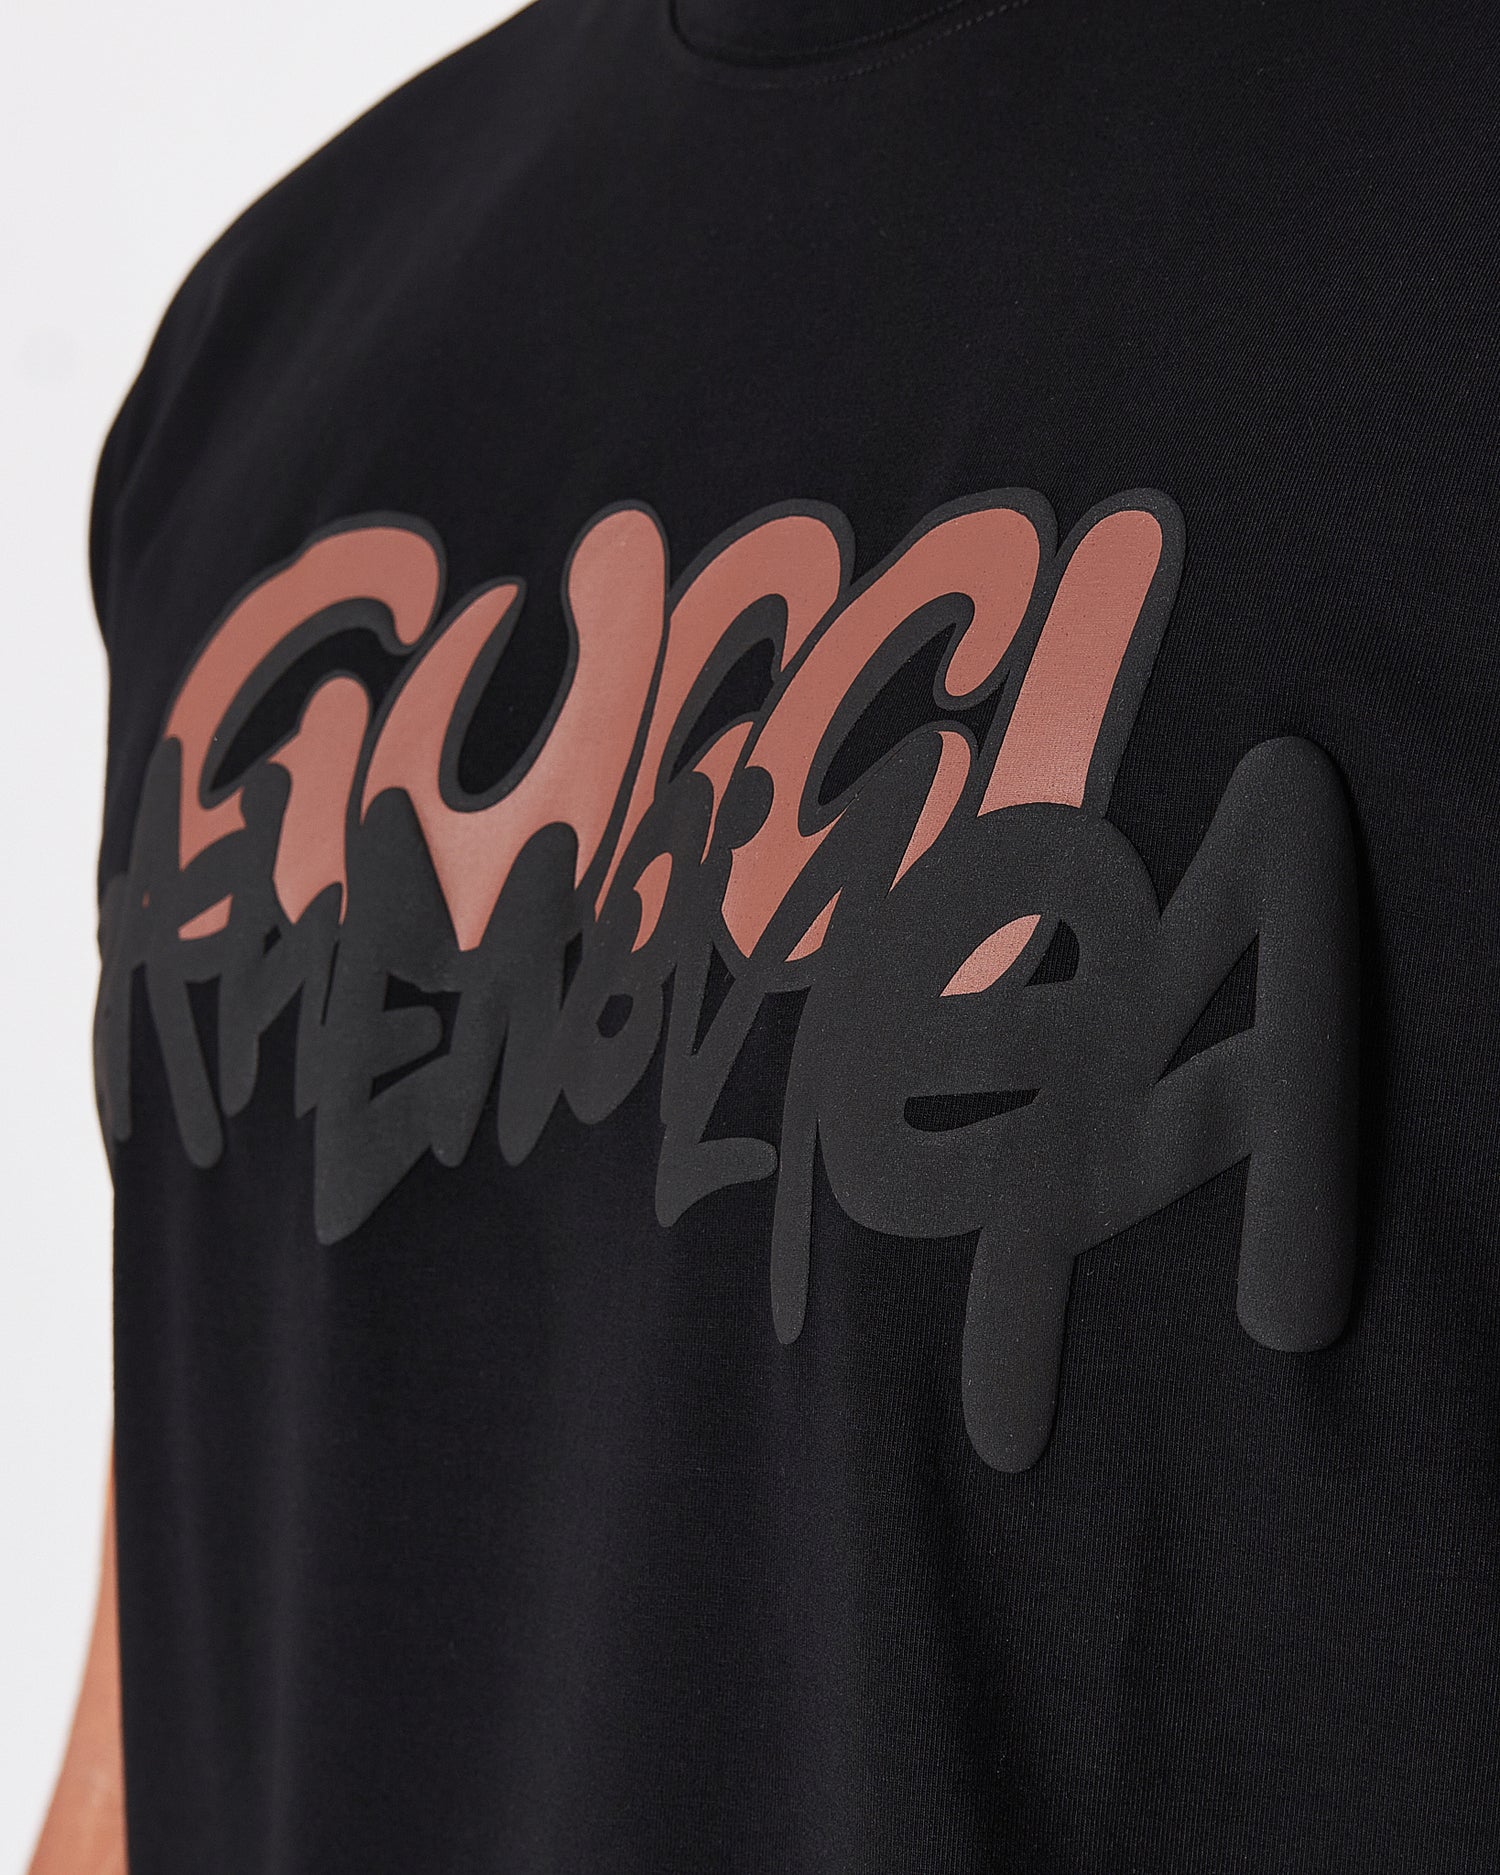 GUC x BB Printed Men Black T-Shirt 18.90